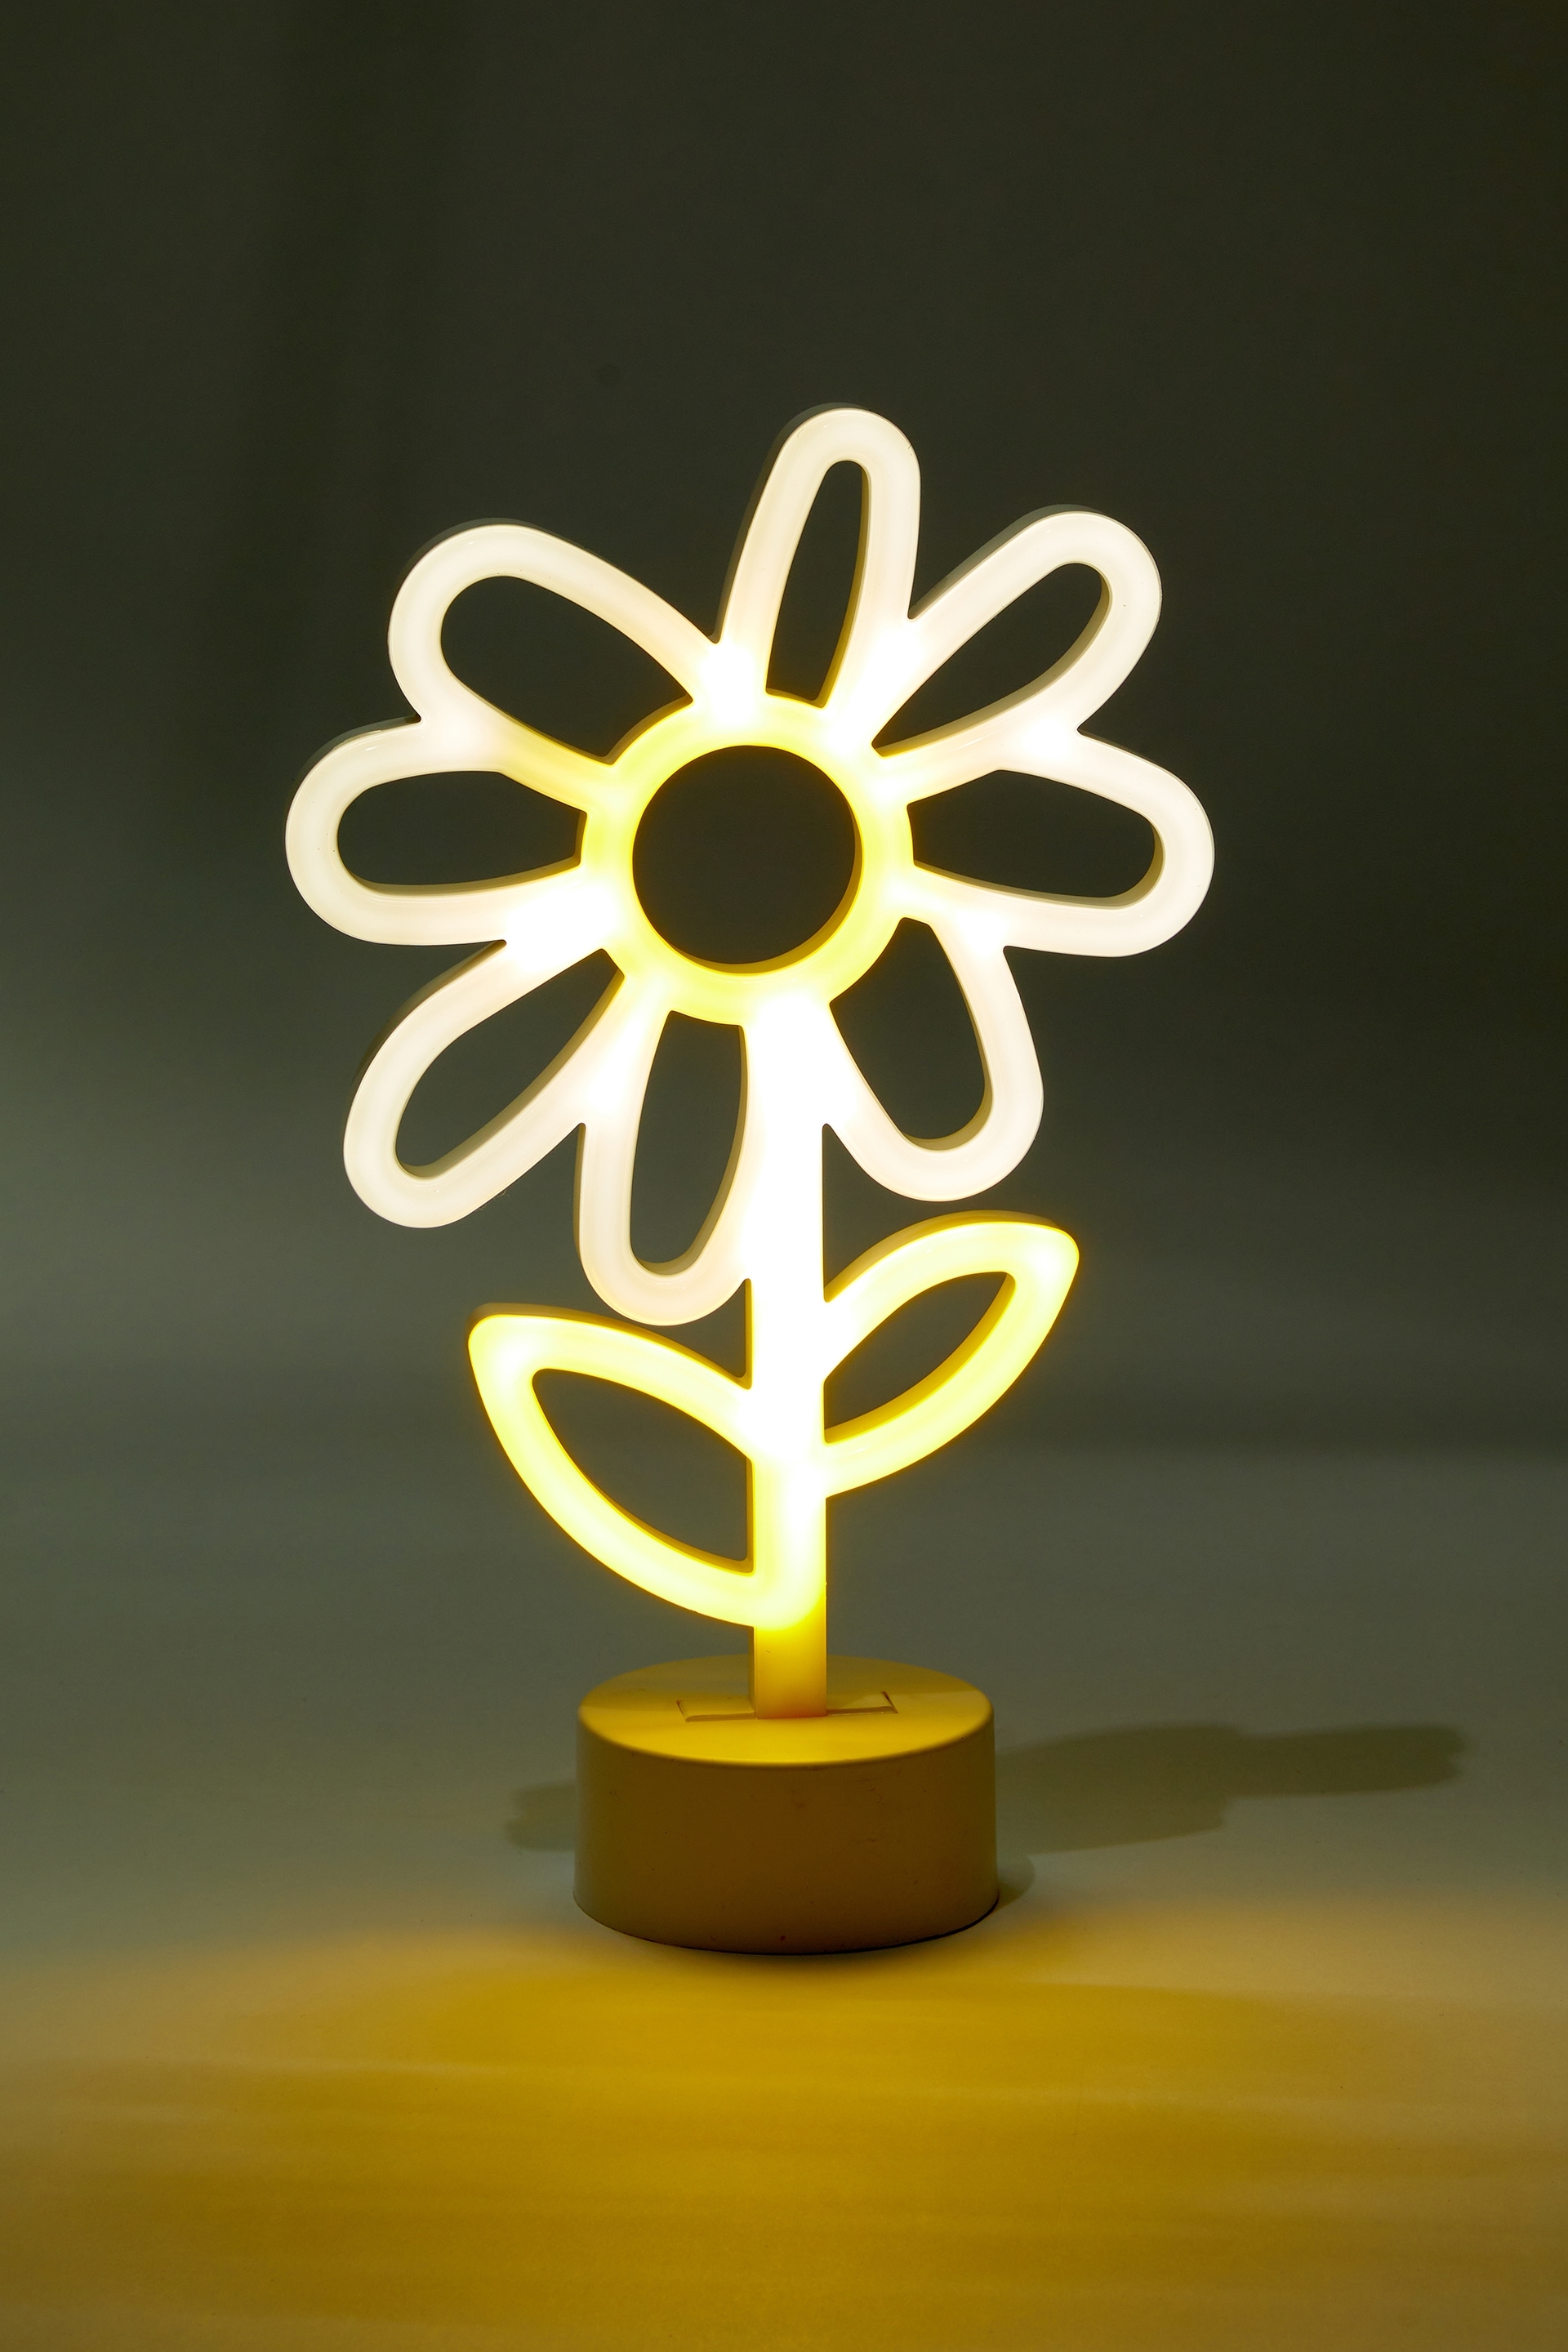 Typo - Shaped Desk Lamp - Daisy